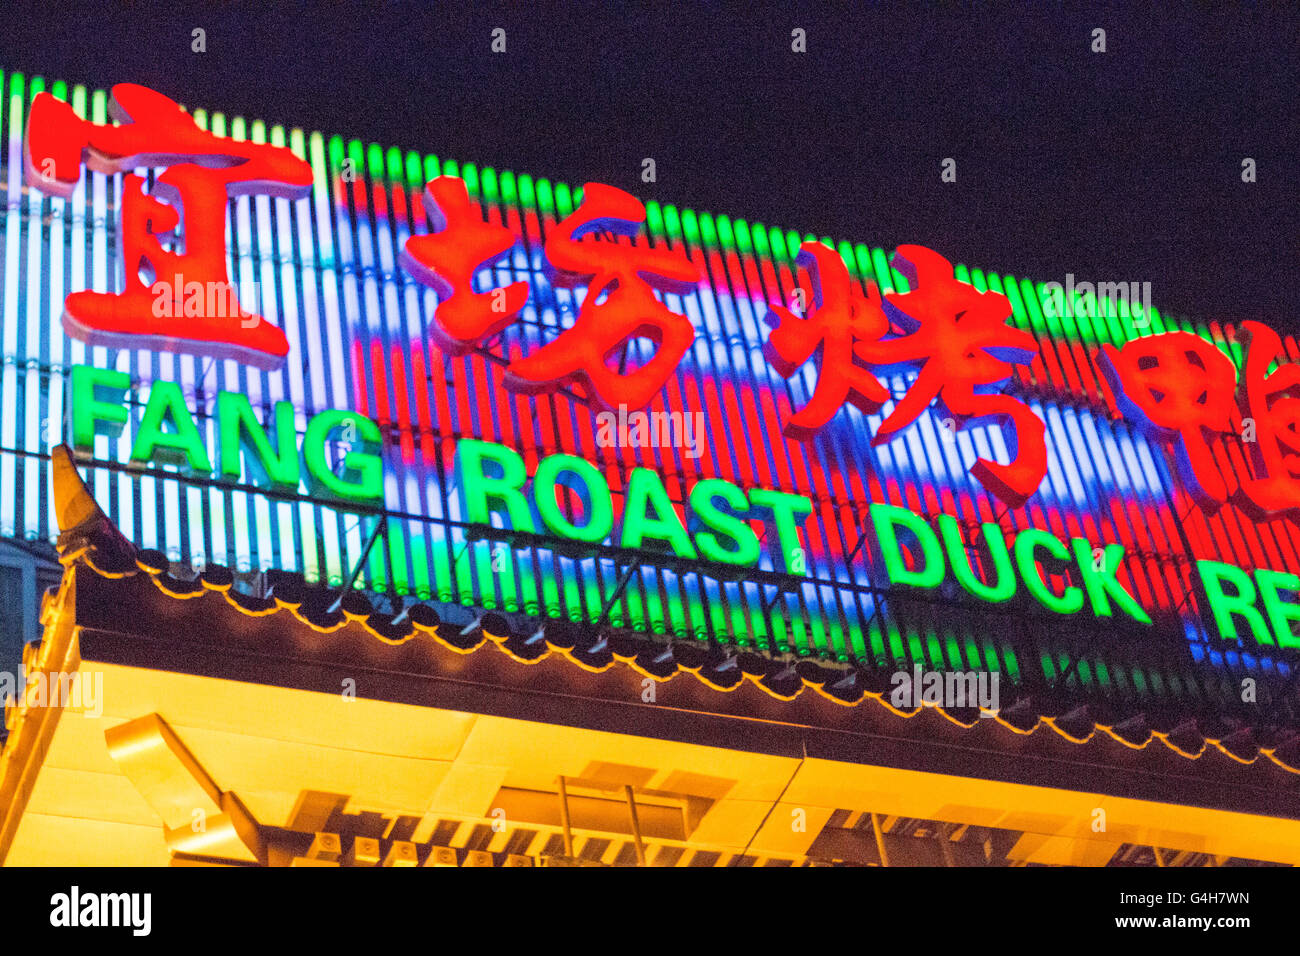 Bian yi fang Peking Roast Duck Restaurant in Beijing, China Asia Stock Photo